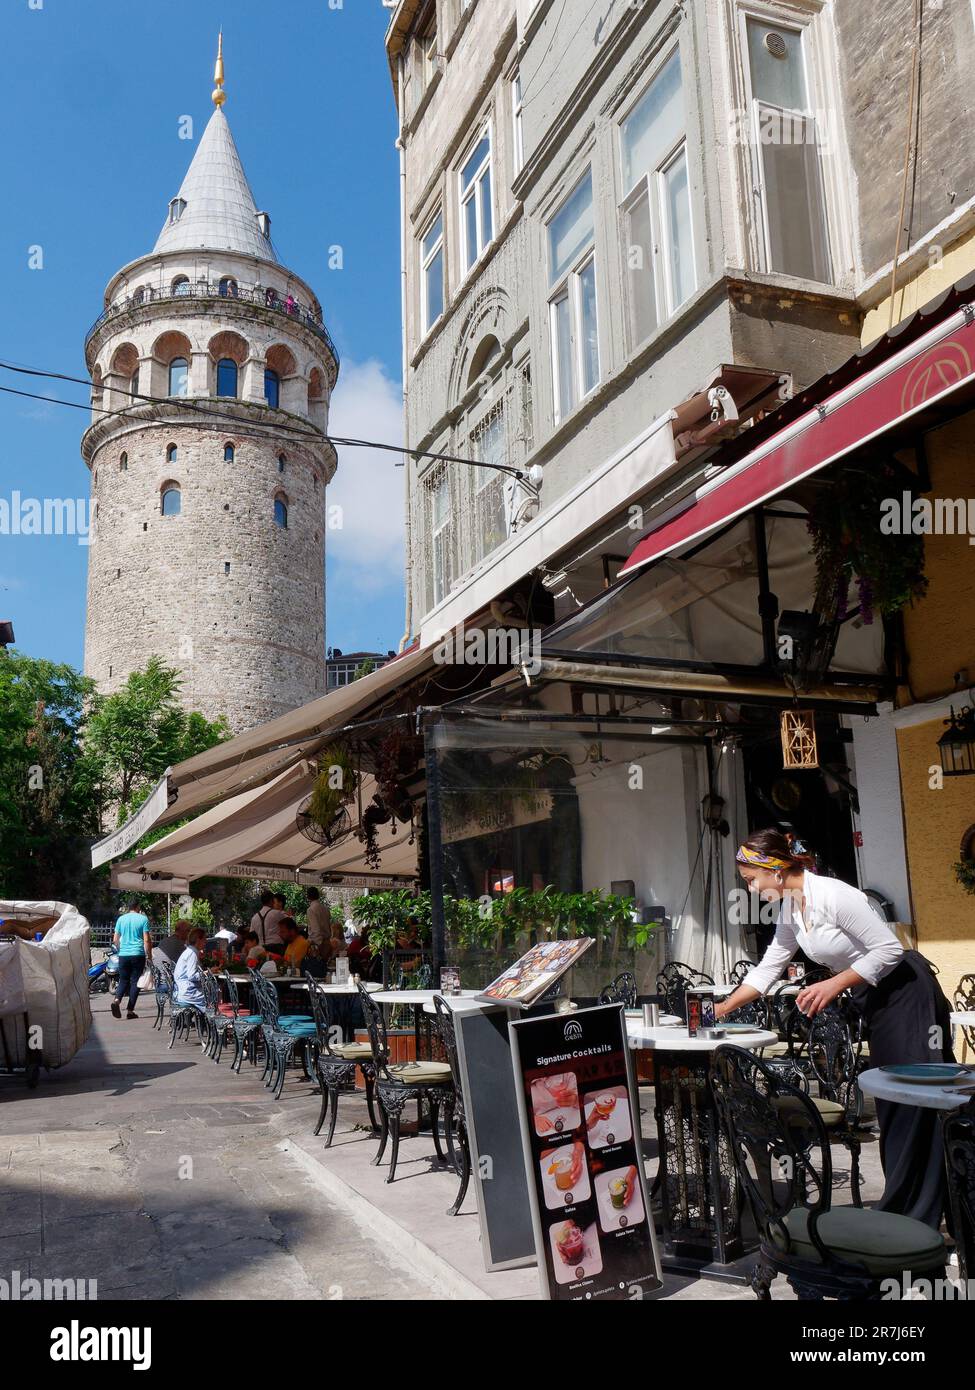 Le serveur pose une table de restaurant devant la Tour de Galata, quartier de Galata, Istanbul, Turquie Banque D'Images